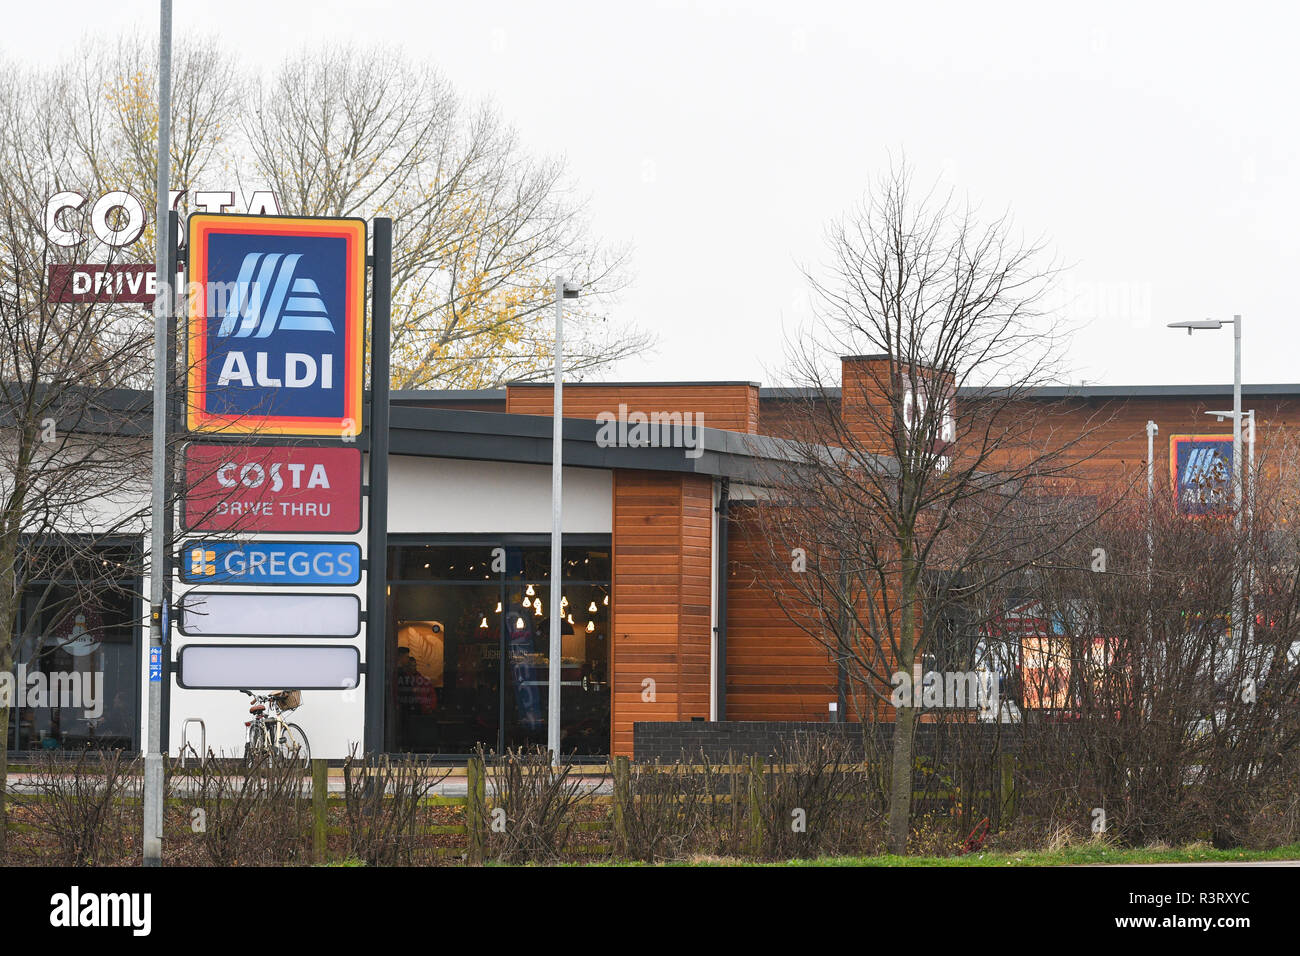 new aldi supermarket in loughborough Stock Photo